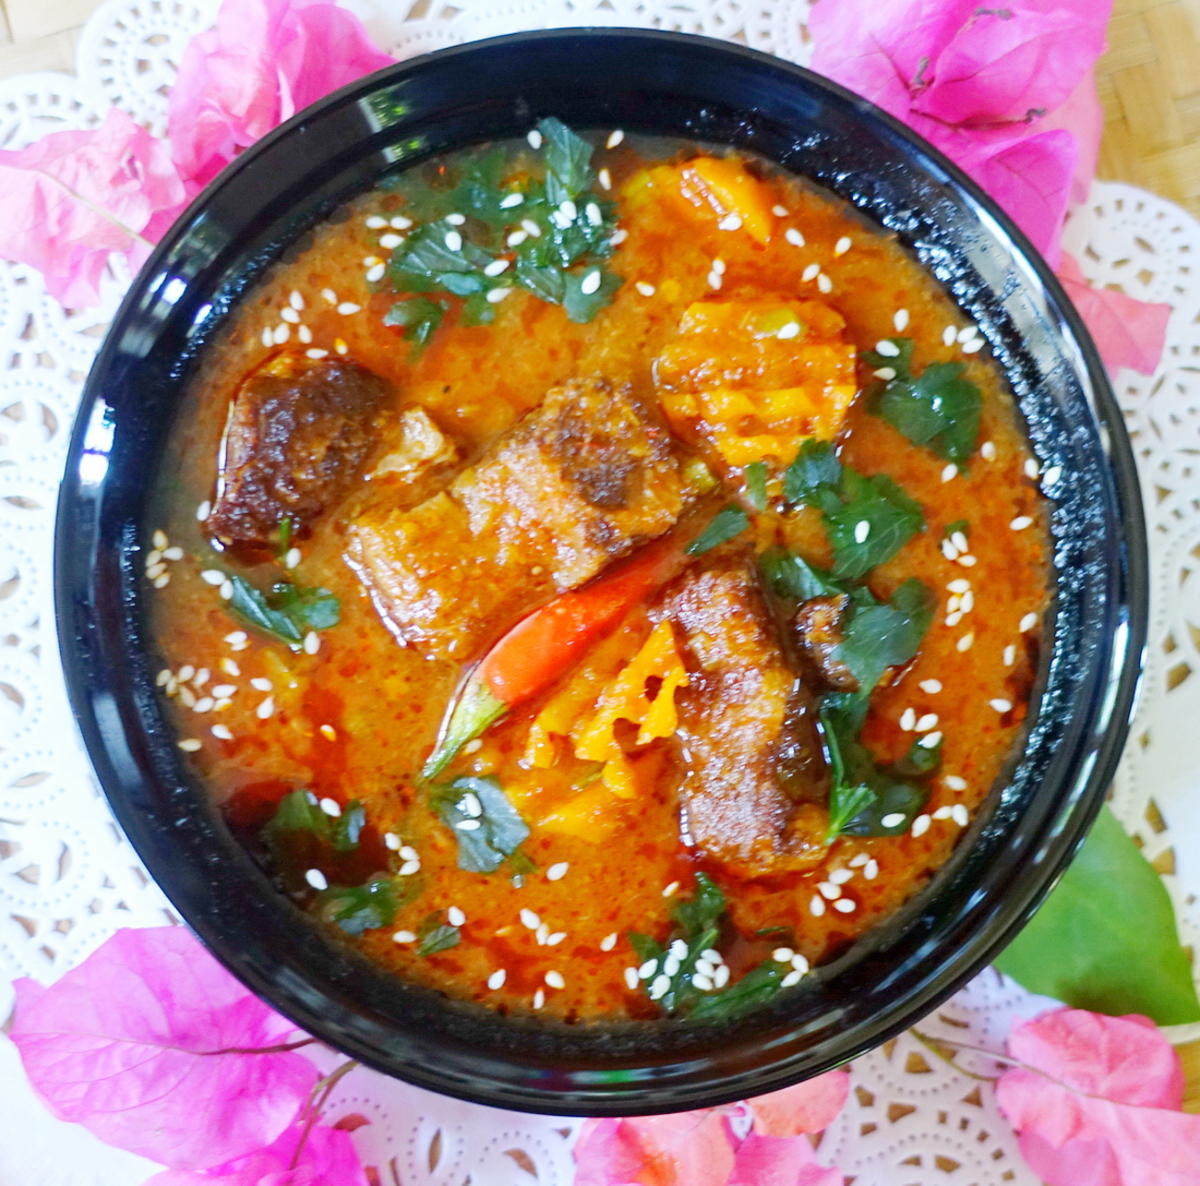 Rotes Rindfleisch-Curry auf thailändische Art - Rezept - Bild Nr. 2